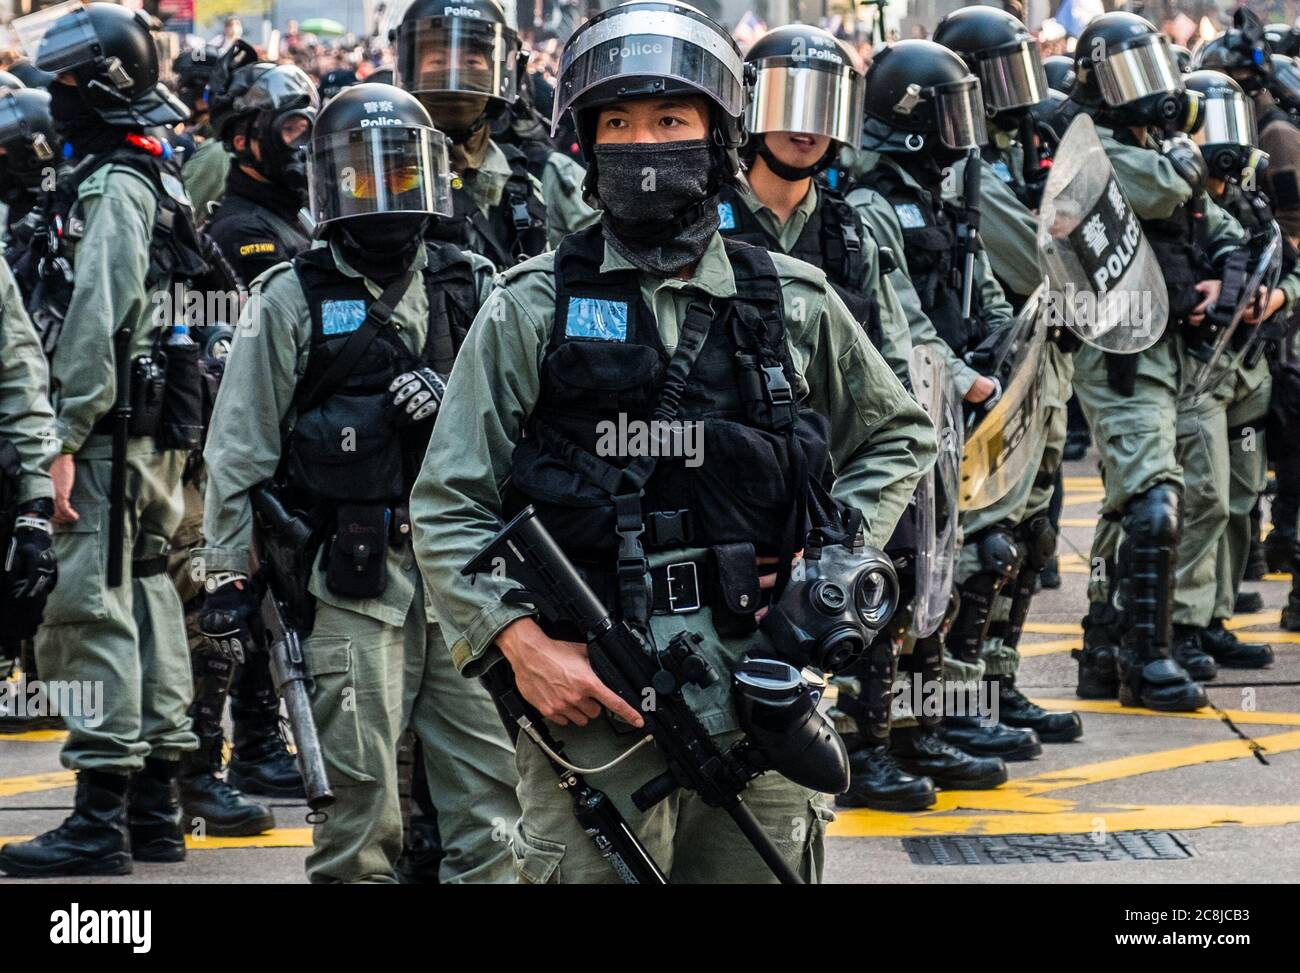 Hongkong - 01 de diciembre de 2019: Policía antidisturbios en manifestación durante las protestas de 2019, una serie de manifestaciones en Hongkong comenzó como el Anti-Extrad Foto de stock